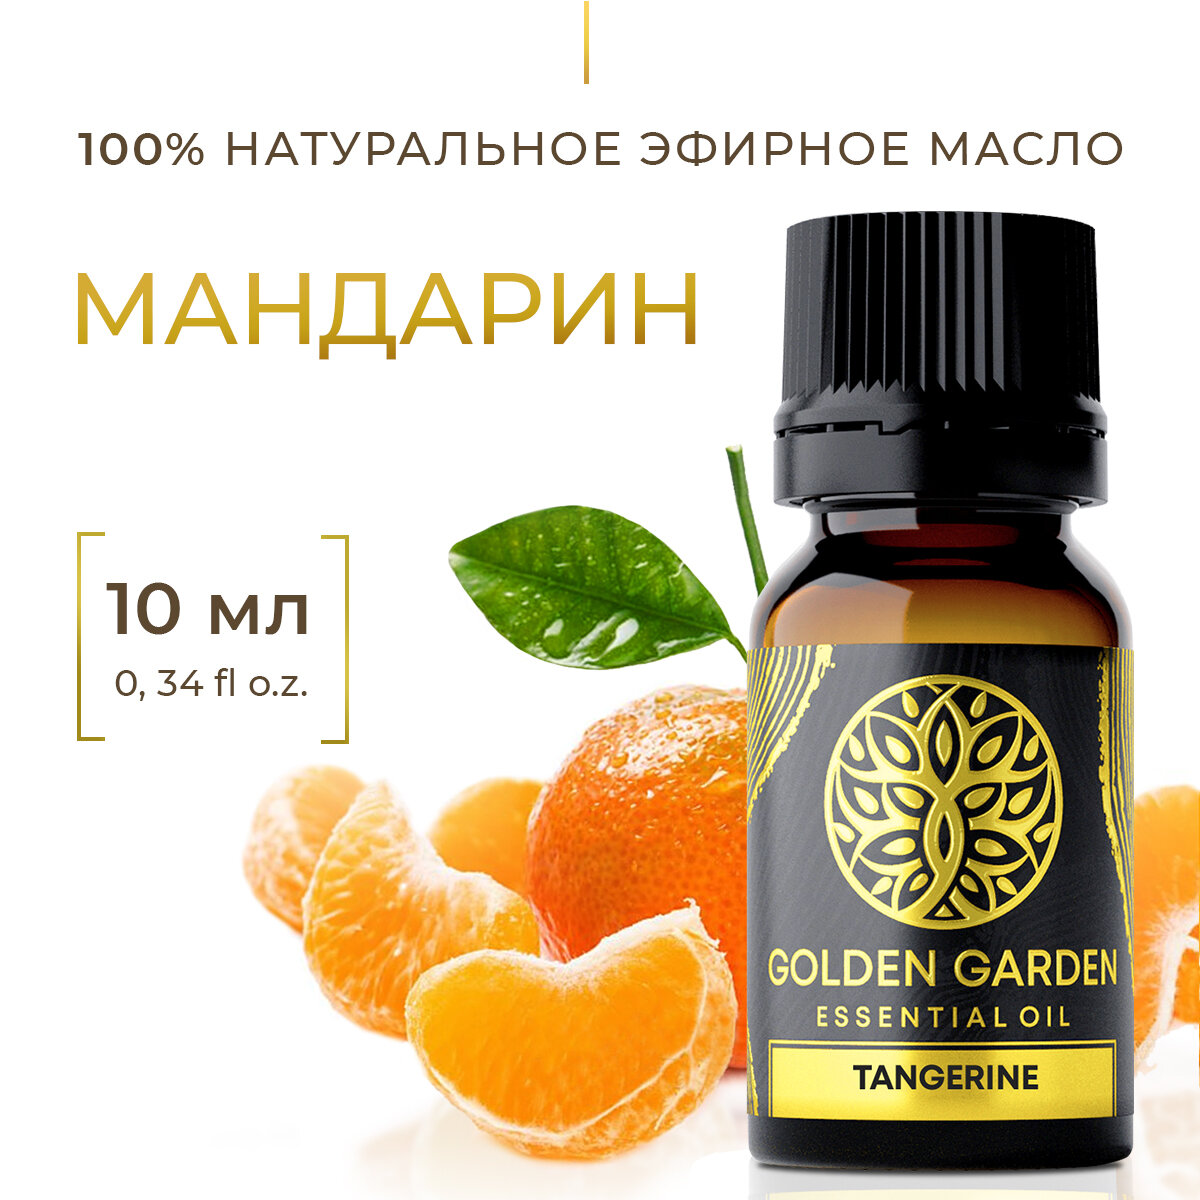 Натуральное Эфирное масло мандарина 10 мл. Golden Garden для ароматерапии диффузора бани и сауны